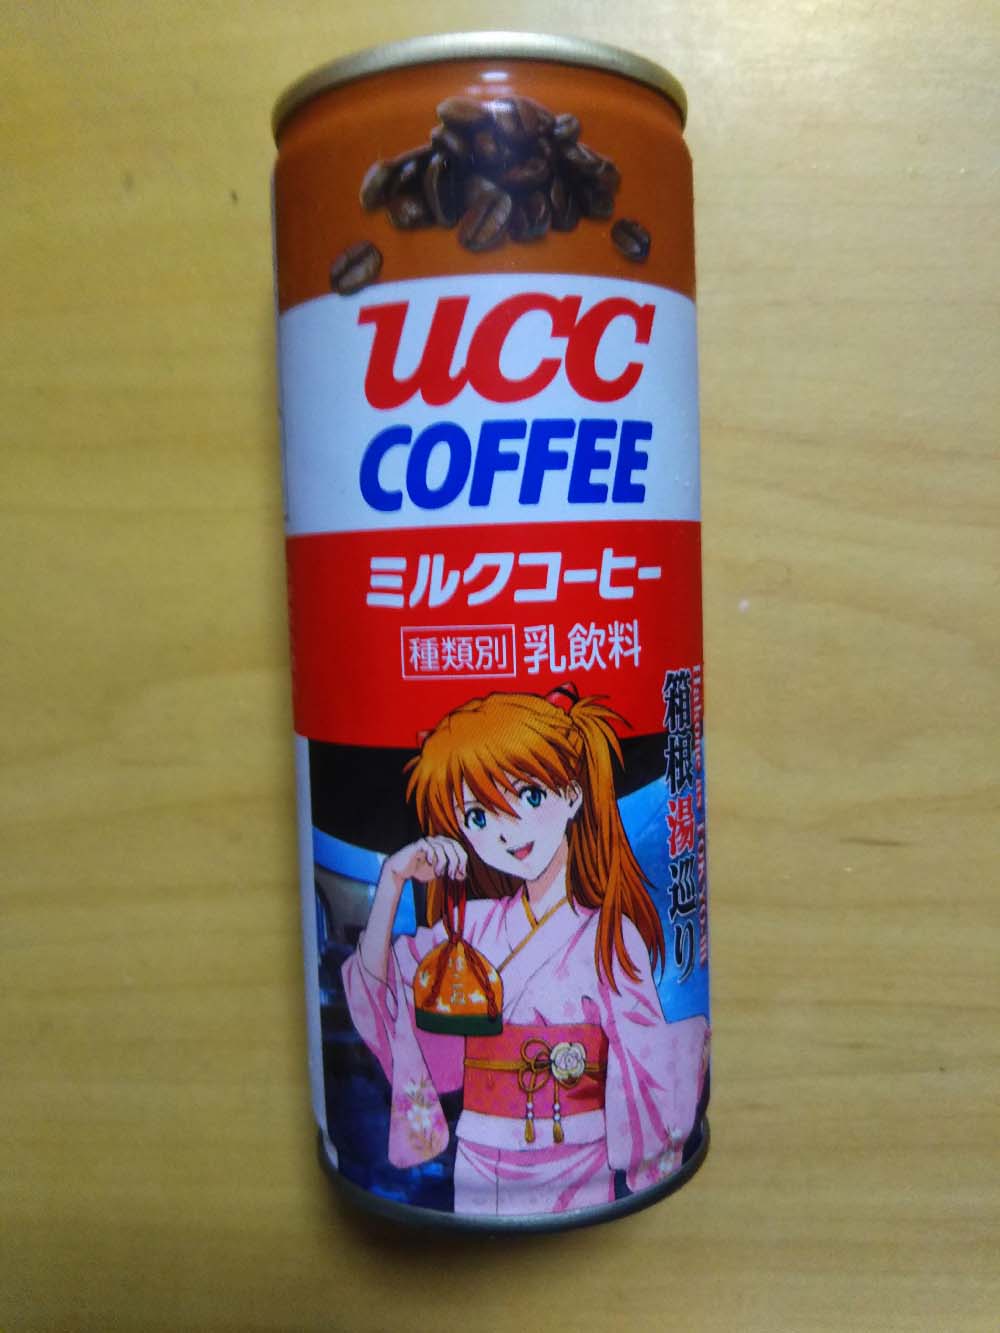 UCCのmilkcoffee